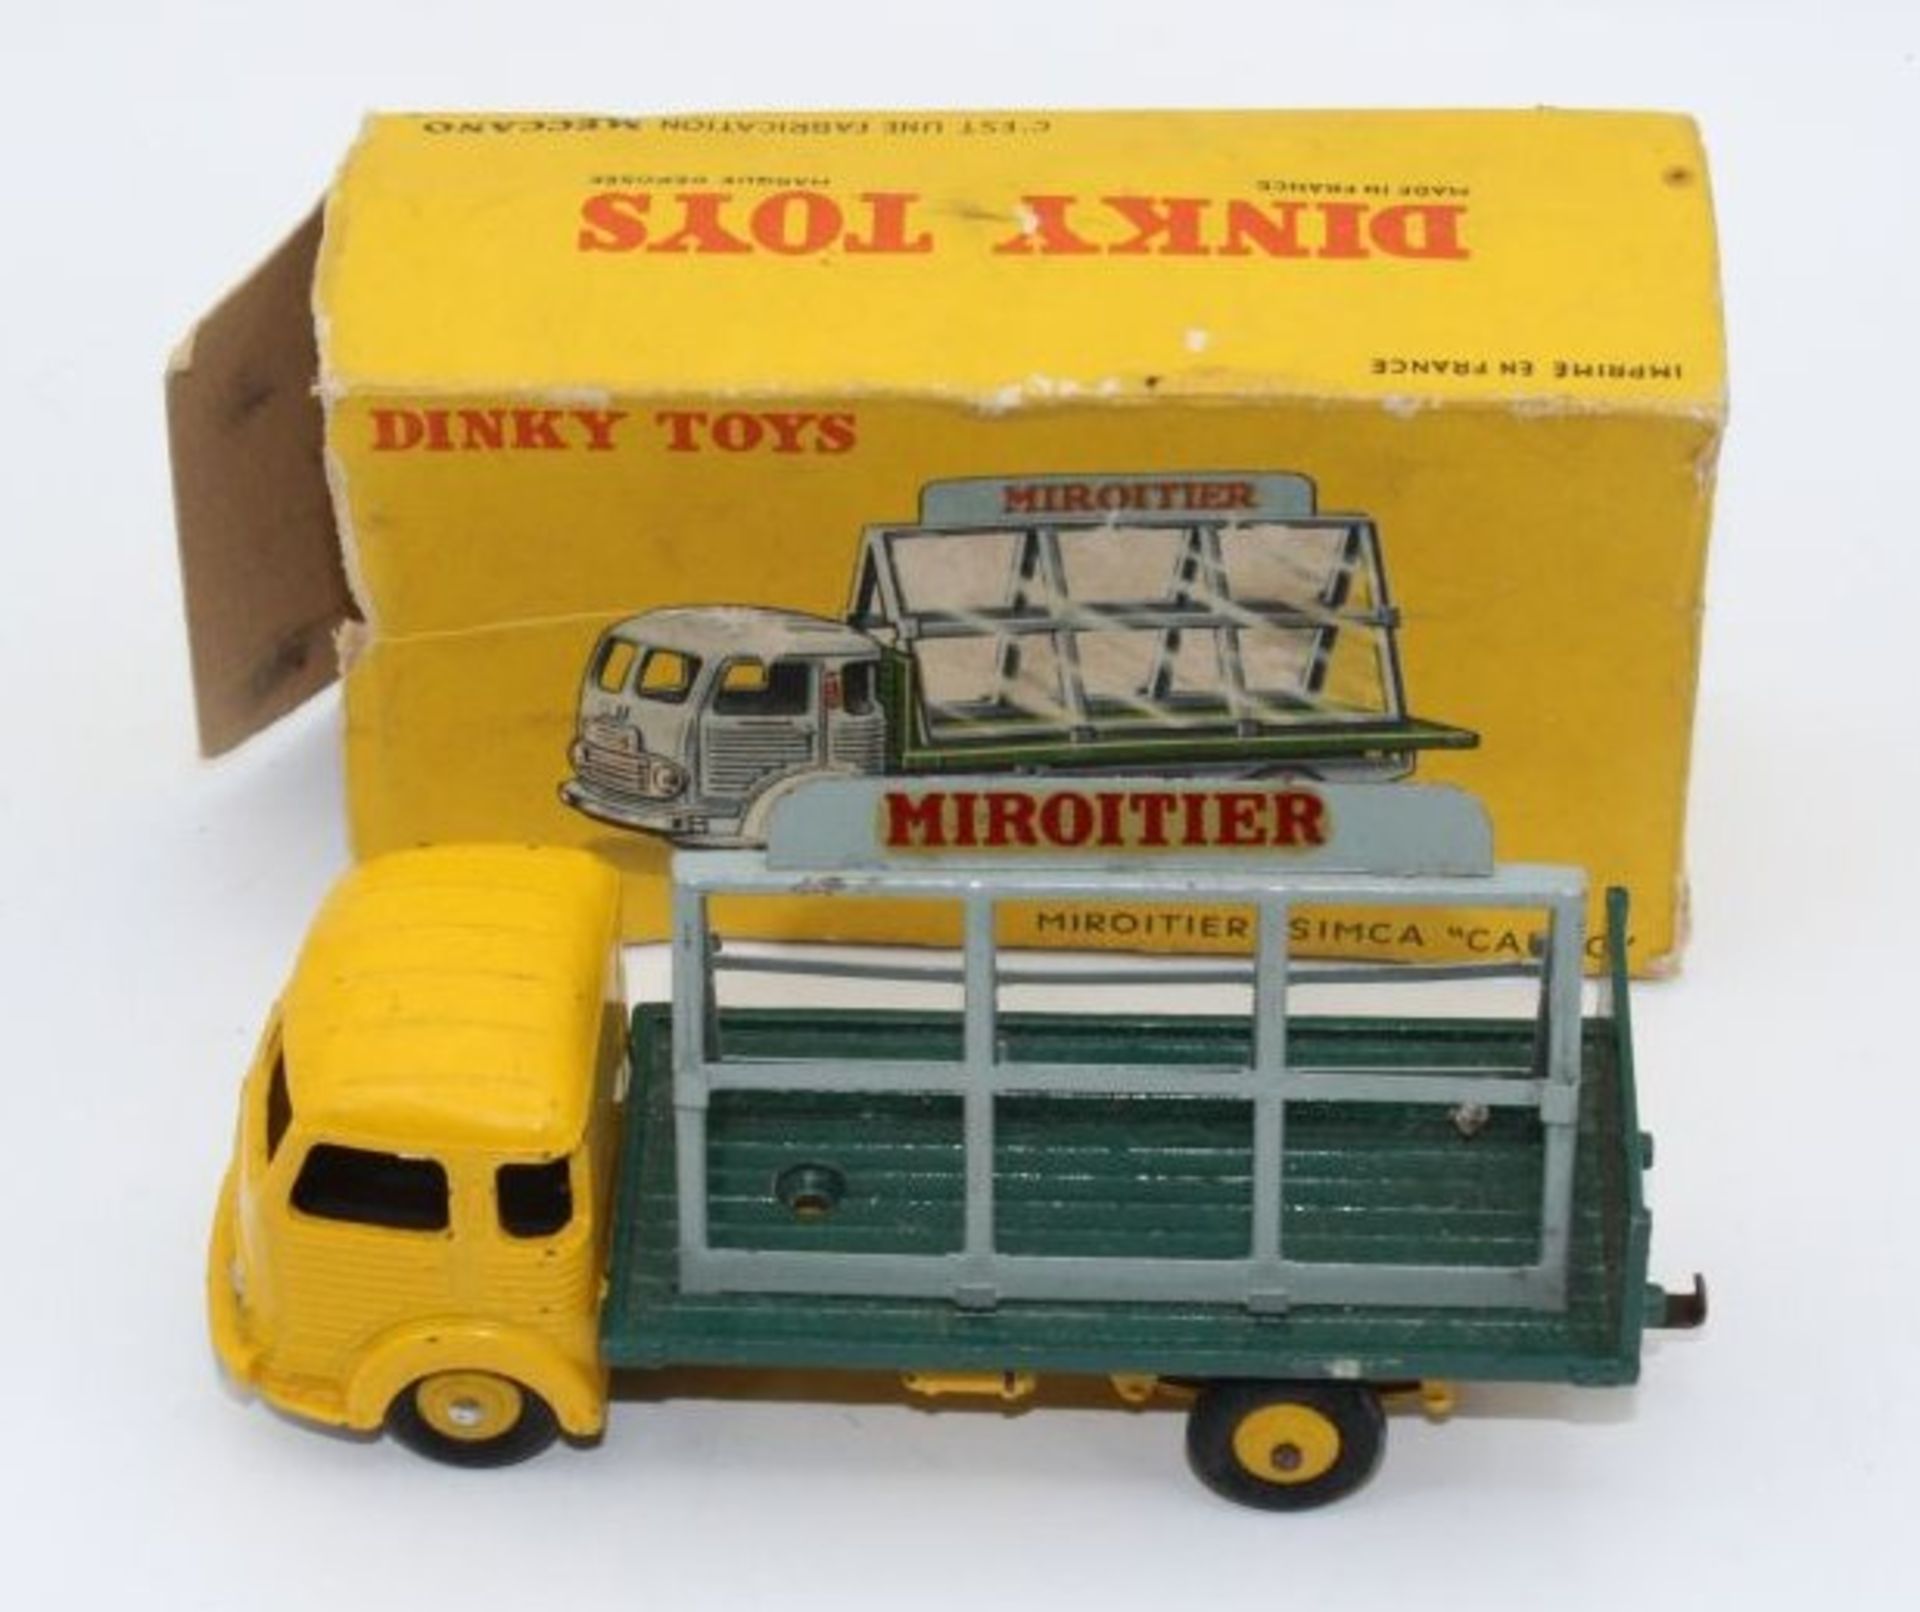 Dinky Toys "Miroitier Simca Cargo", Frankreich, 1:43, bespielt, orig. Karton mit starken Läsuren.- -